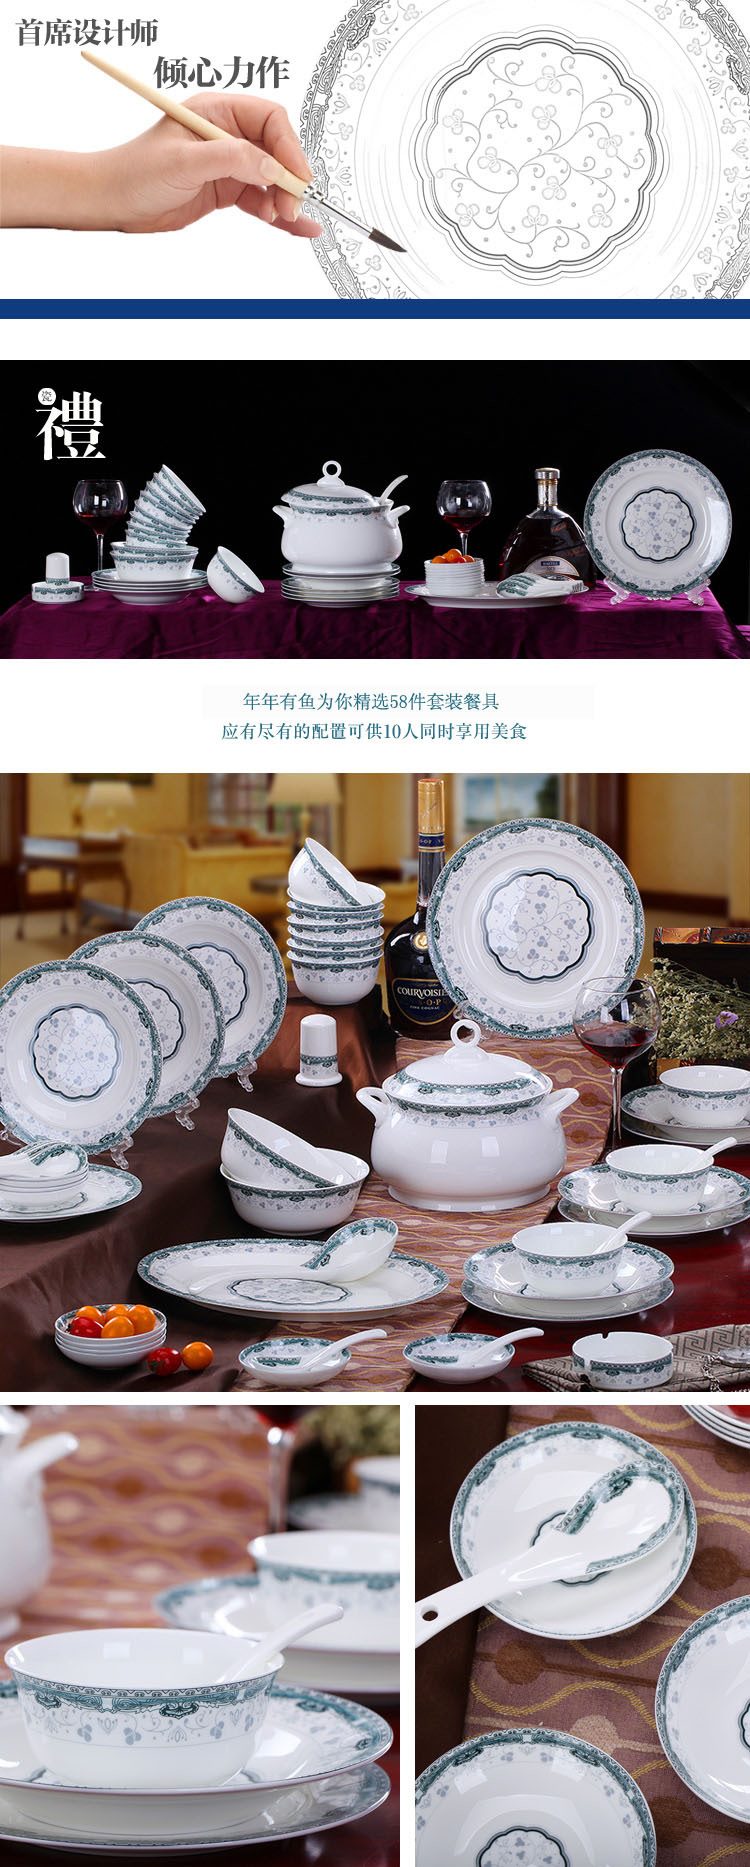 CJ31 景德镇陶瓷 餐具56头高档骨瓷餐具套装盘碗碟厂家直销批发礼品